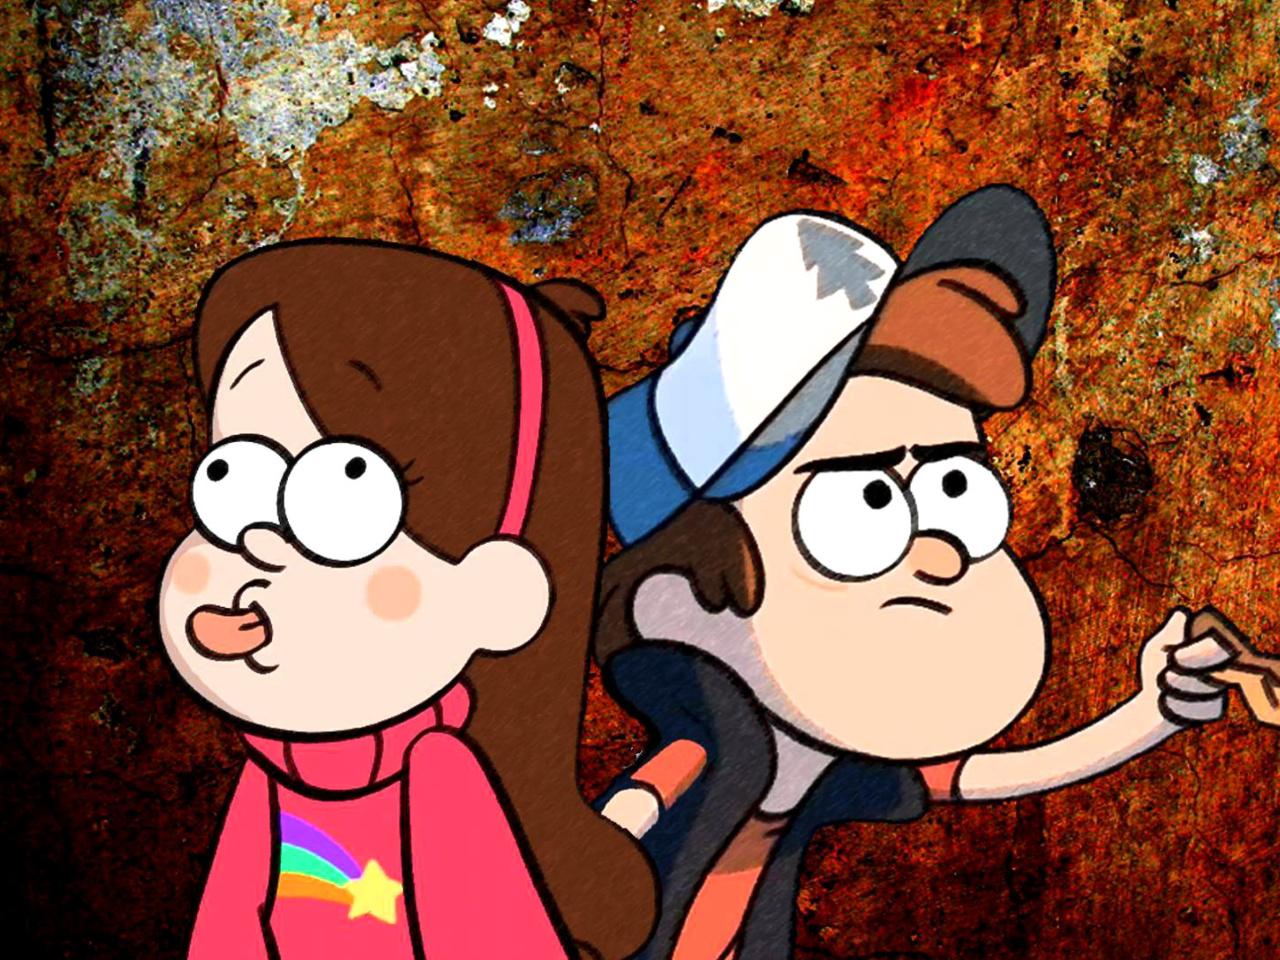 Mabel and Dipper in Gravity Falls wallpaper 1280x960